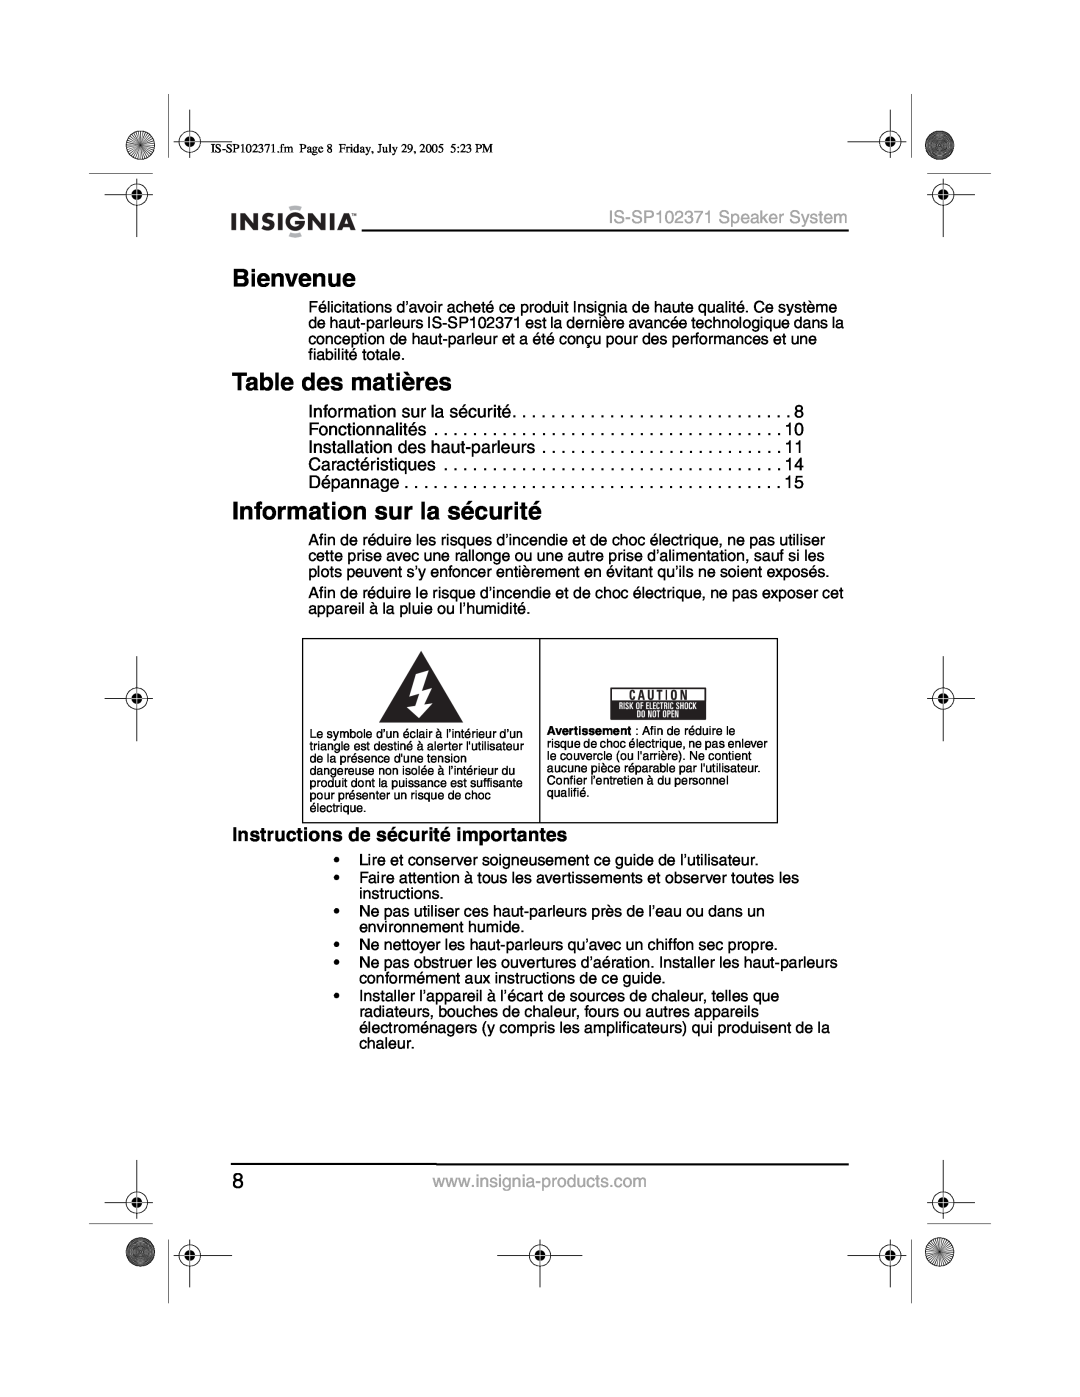 Insignia IS-SP102371 Bienvenue, Table des matières, Information sur la sécurité, Instructions de sécurité importantes 